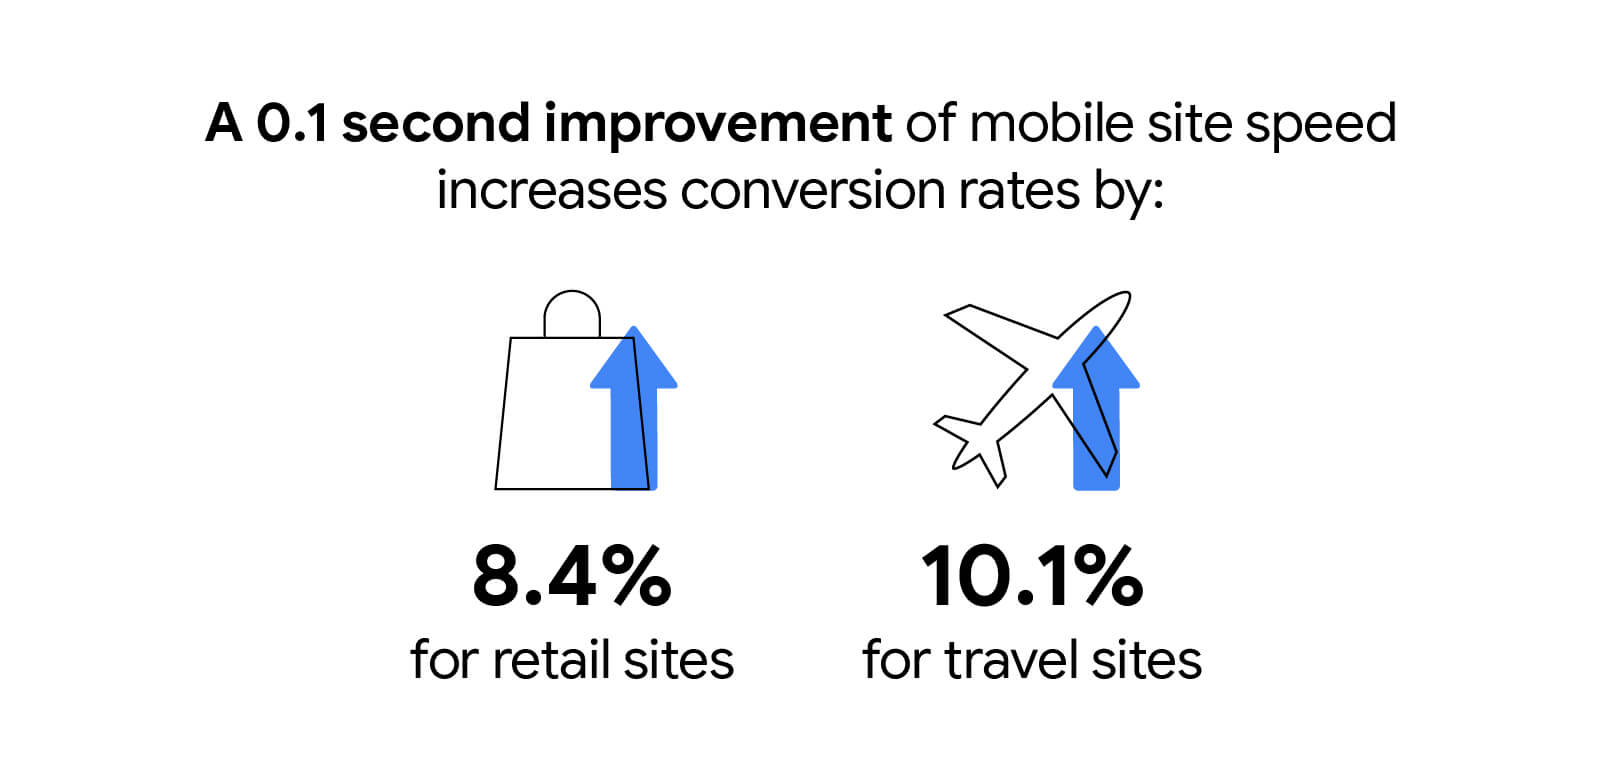 Mobil site hızında 0,1 saniyelik iyileştirme perakende sitelerinde dönüşüm oranlarını% 8,4, seyahat sitelerinde ise% 10,1 artırıyor.